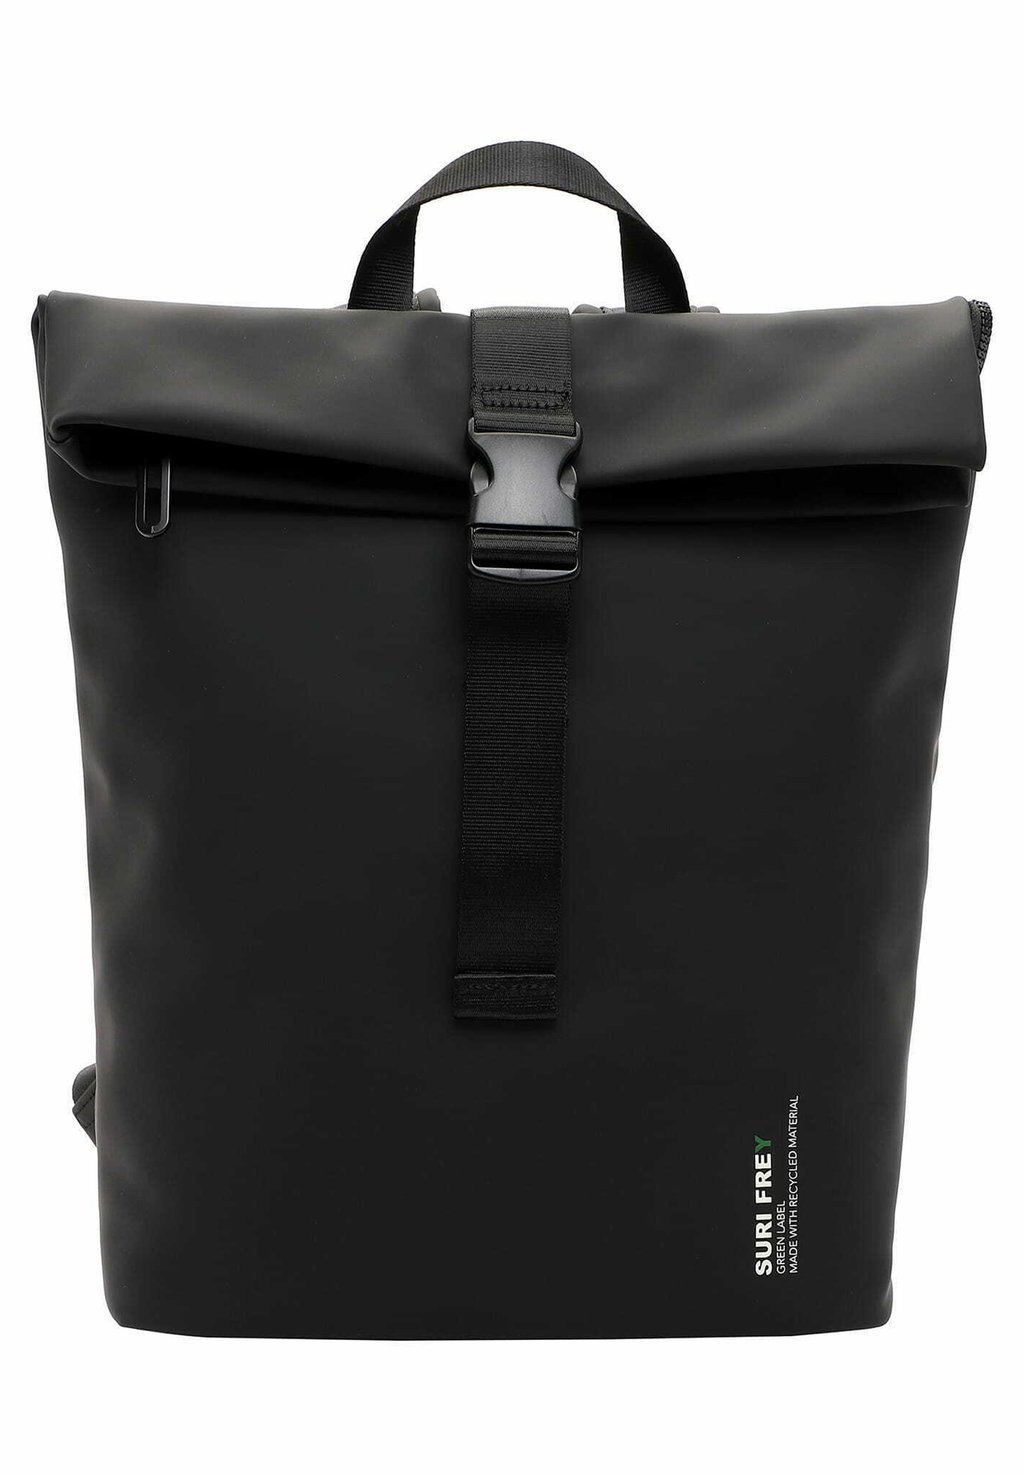 Рюкзак для путешествий Suri Frey Label, чёрный